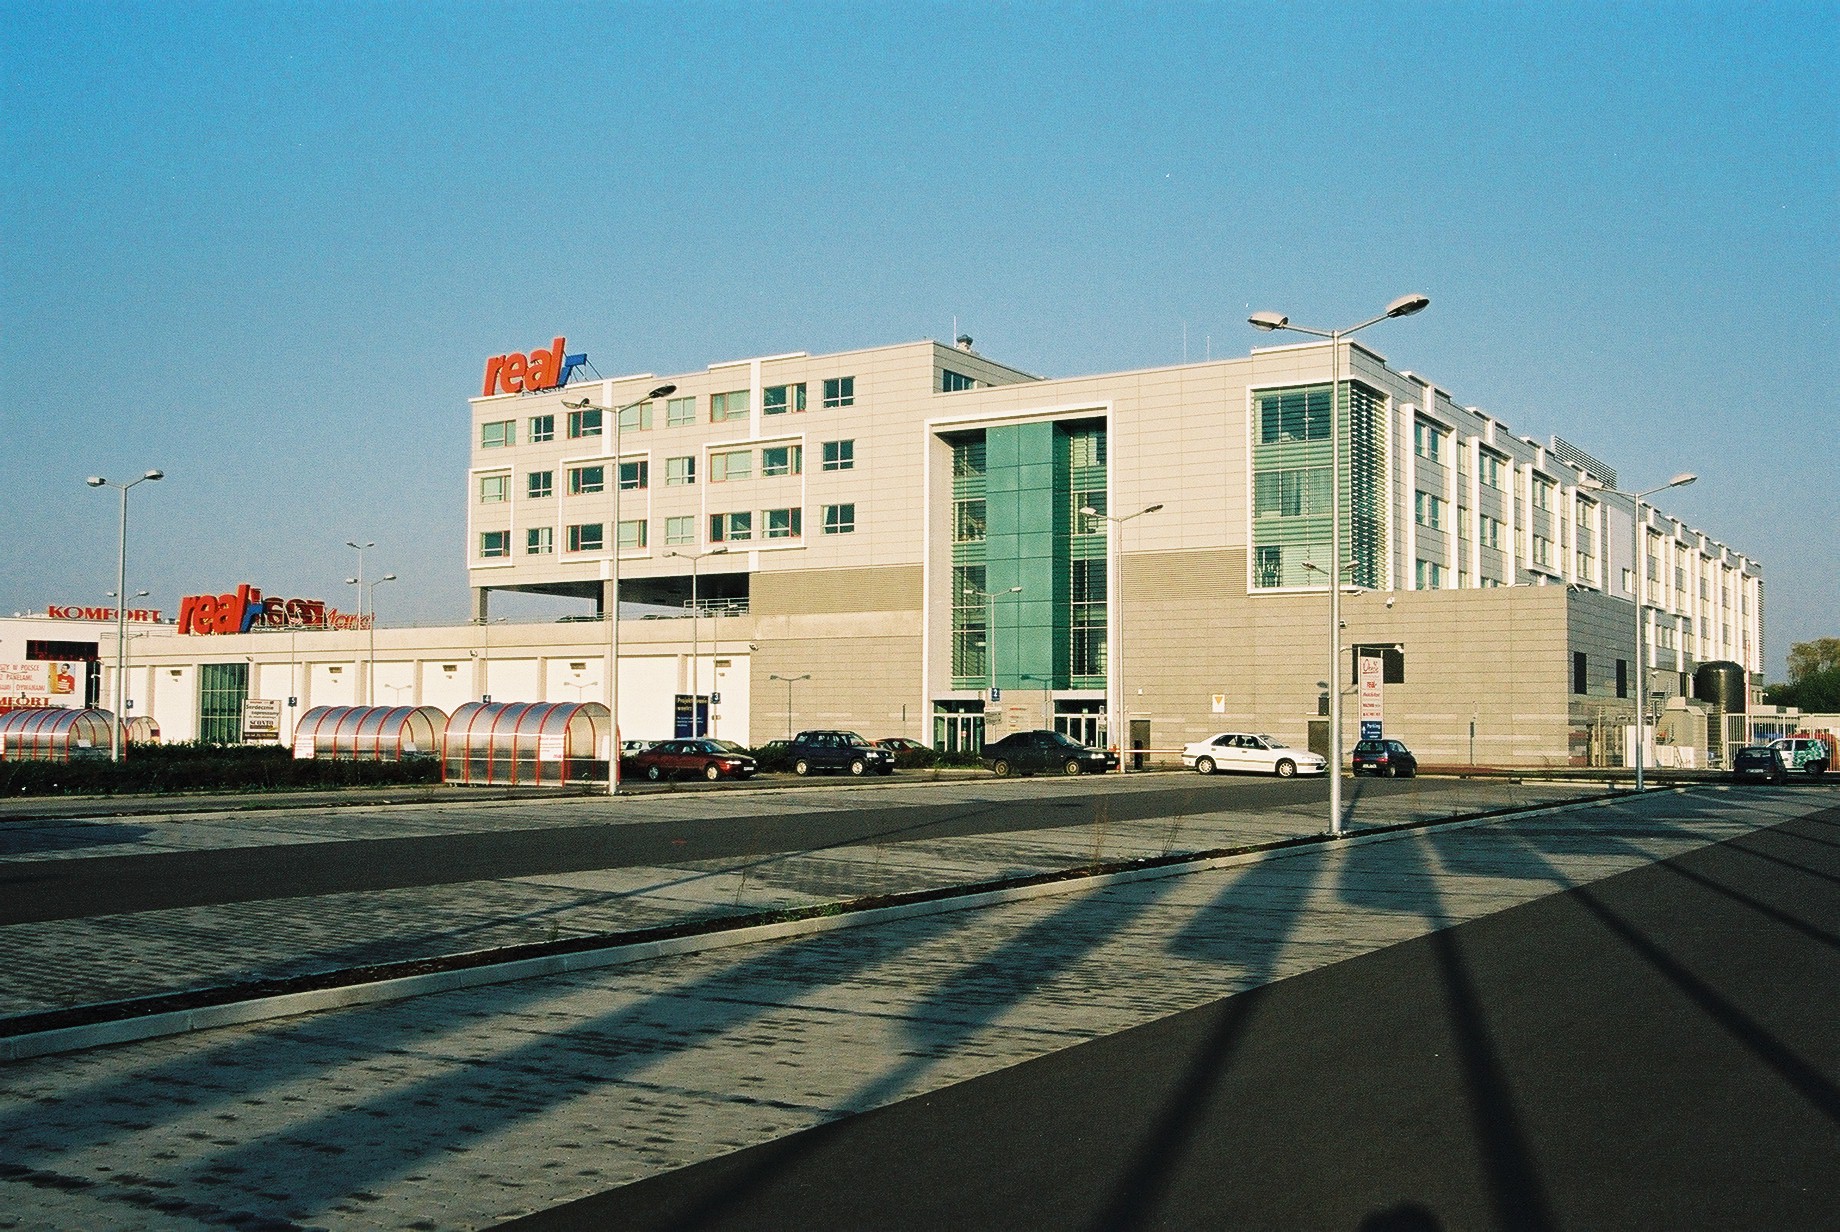 Hipermarket Real i Biurowiec Metro AG w Warszawie - Construcții industriale